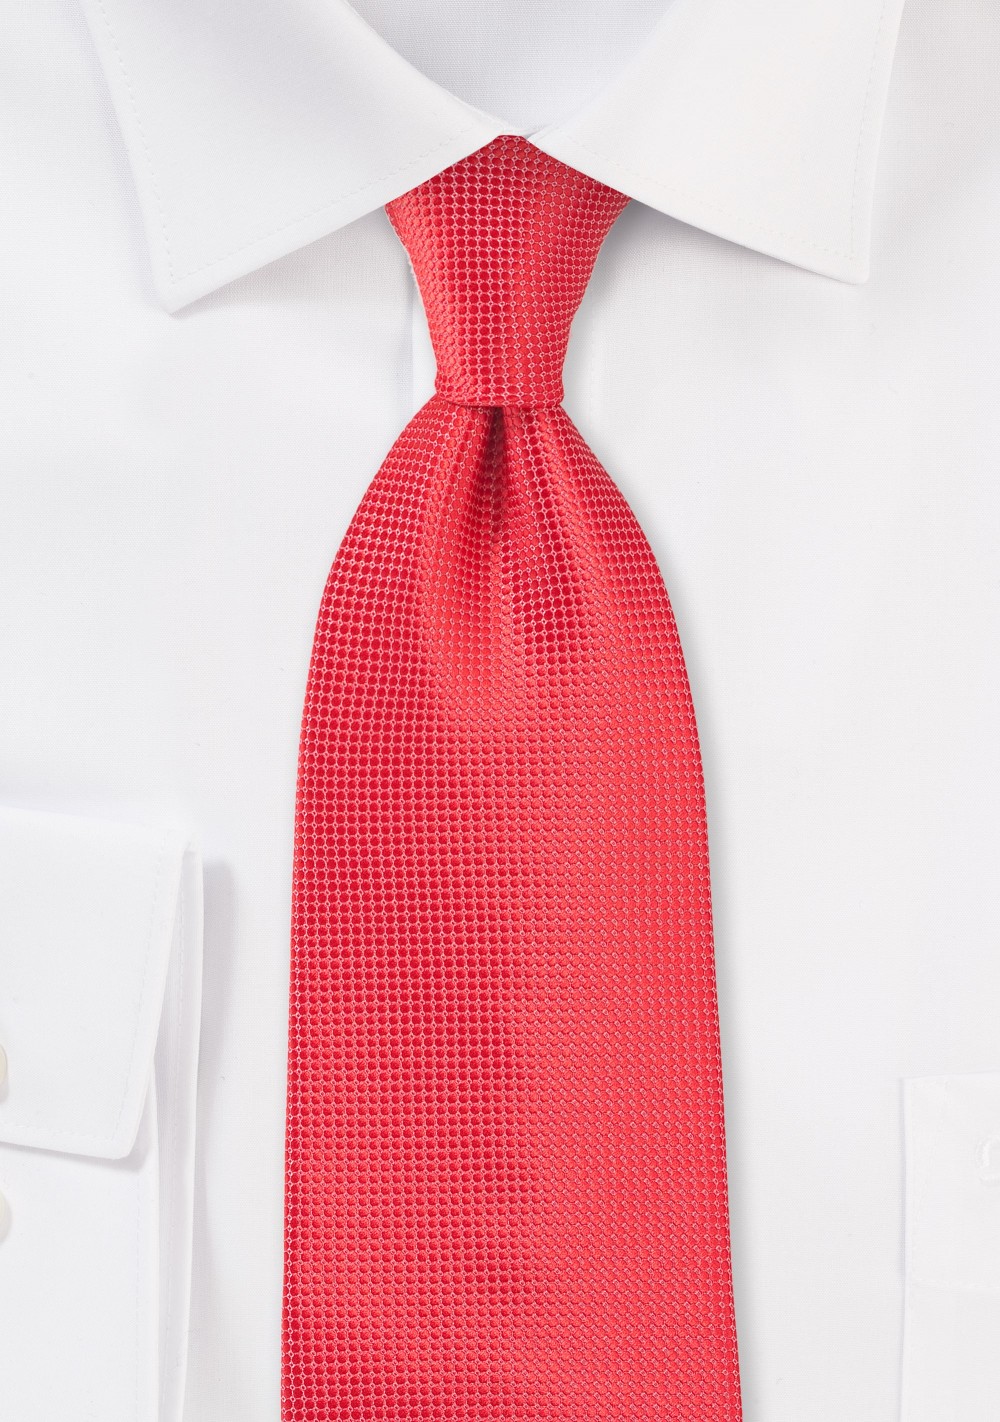 Extra Long Coral Color Necktie